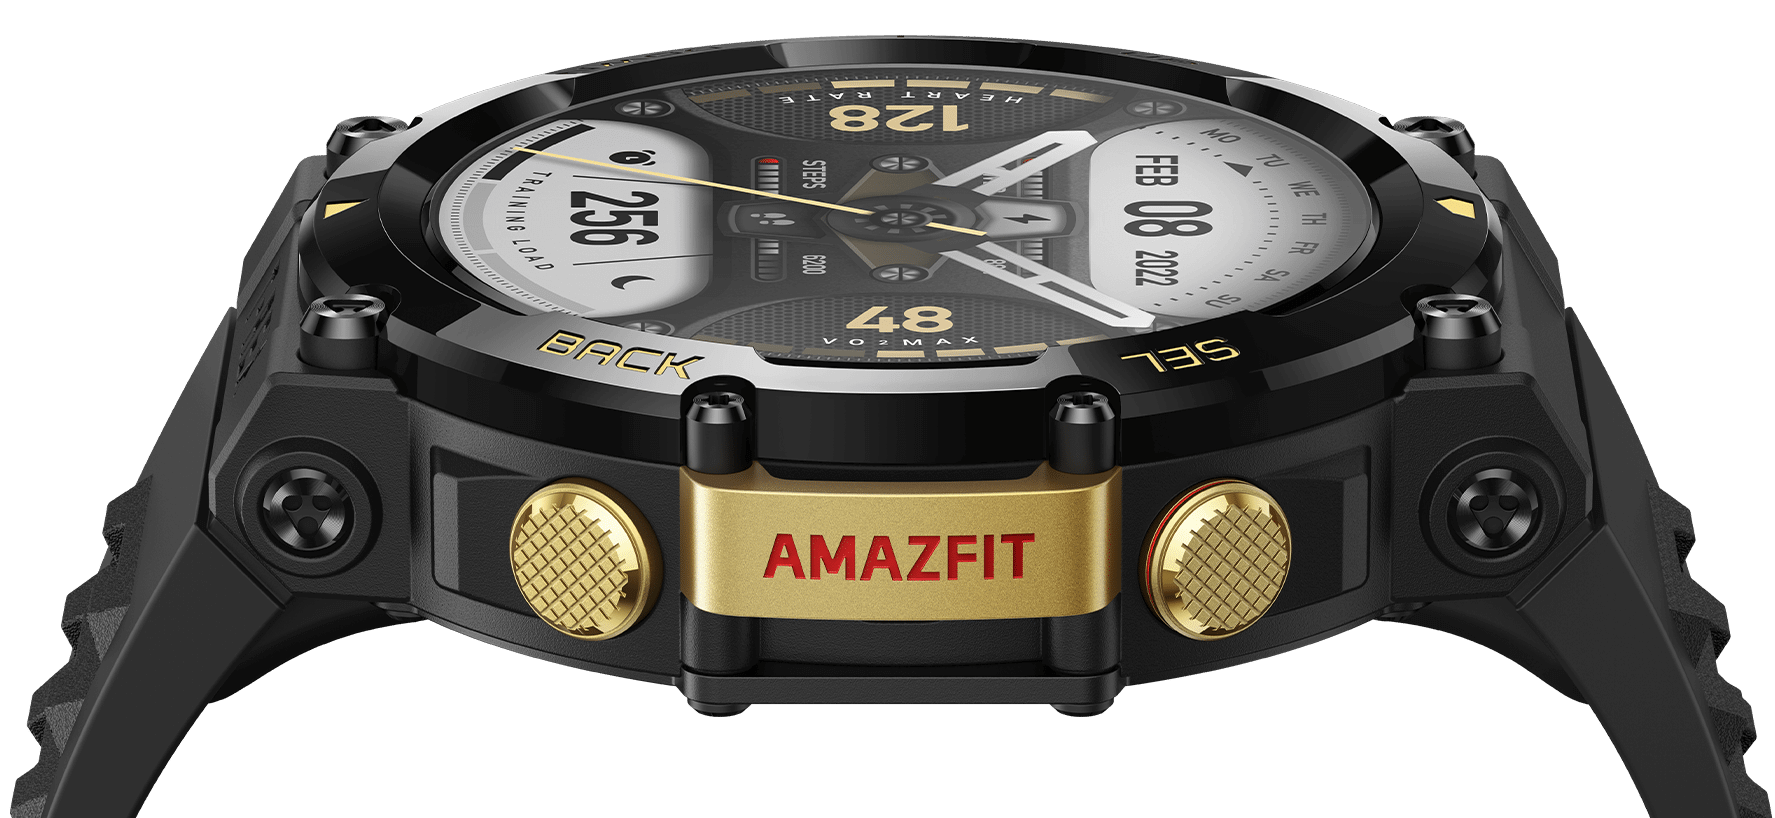 El análisis del smartwatch deportivo Amazfit T-Rex 2